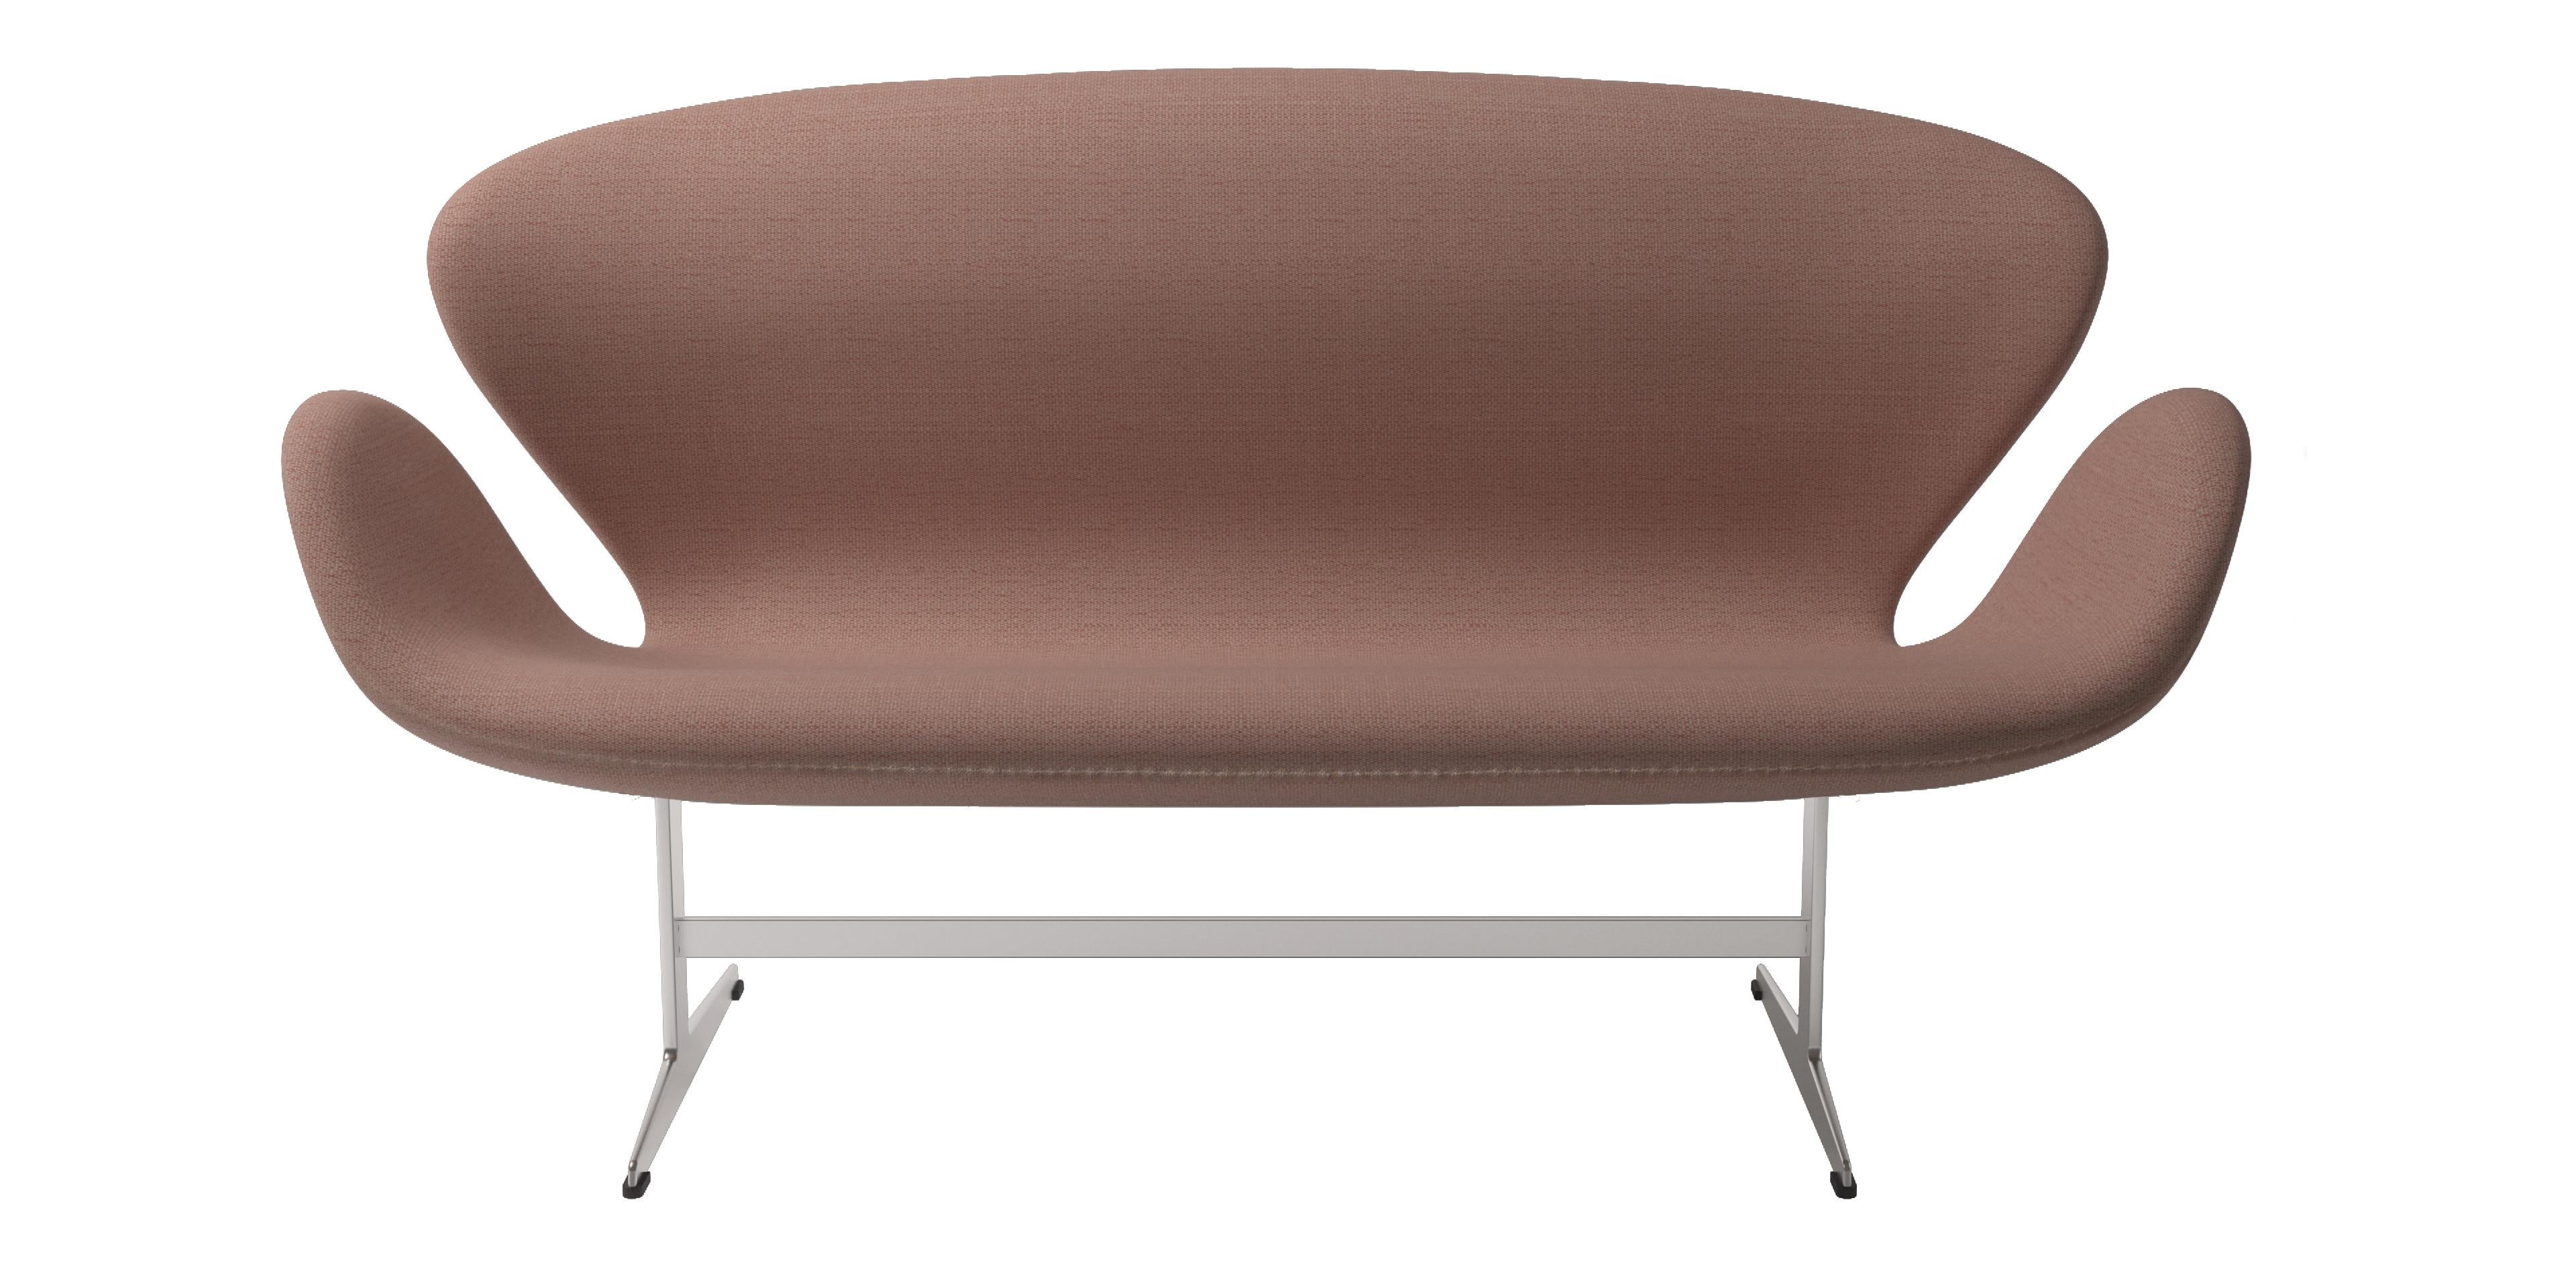 Arne Jacobsen 'Swan' Sofa for Fritz Hansen in Christianshavn Fabric Upholstery For Sale 4